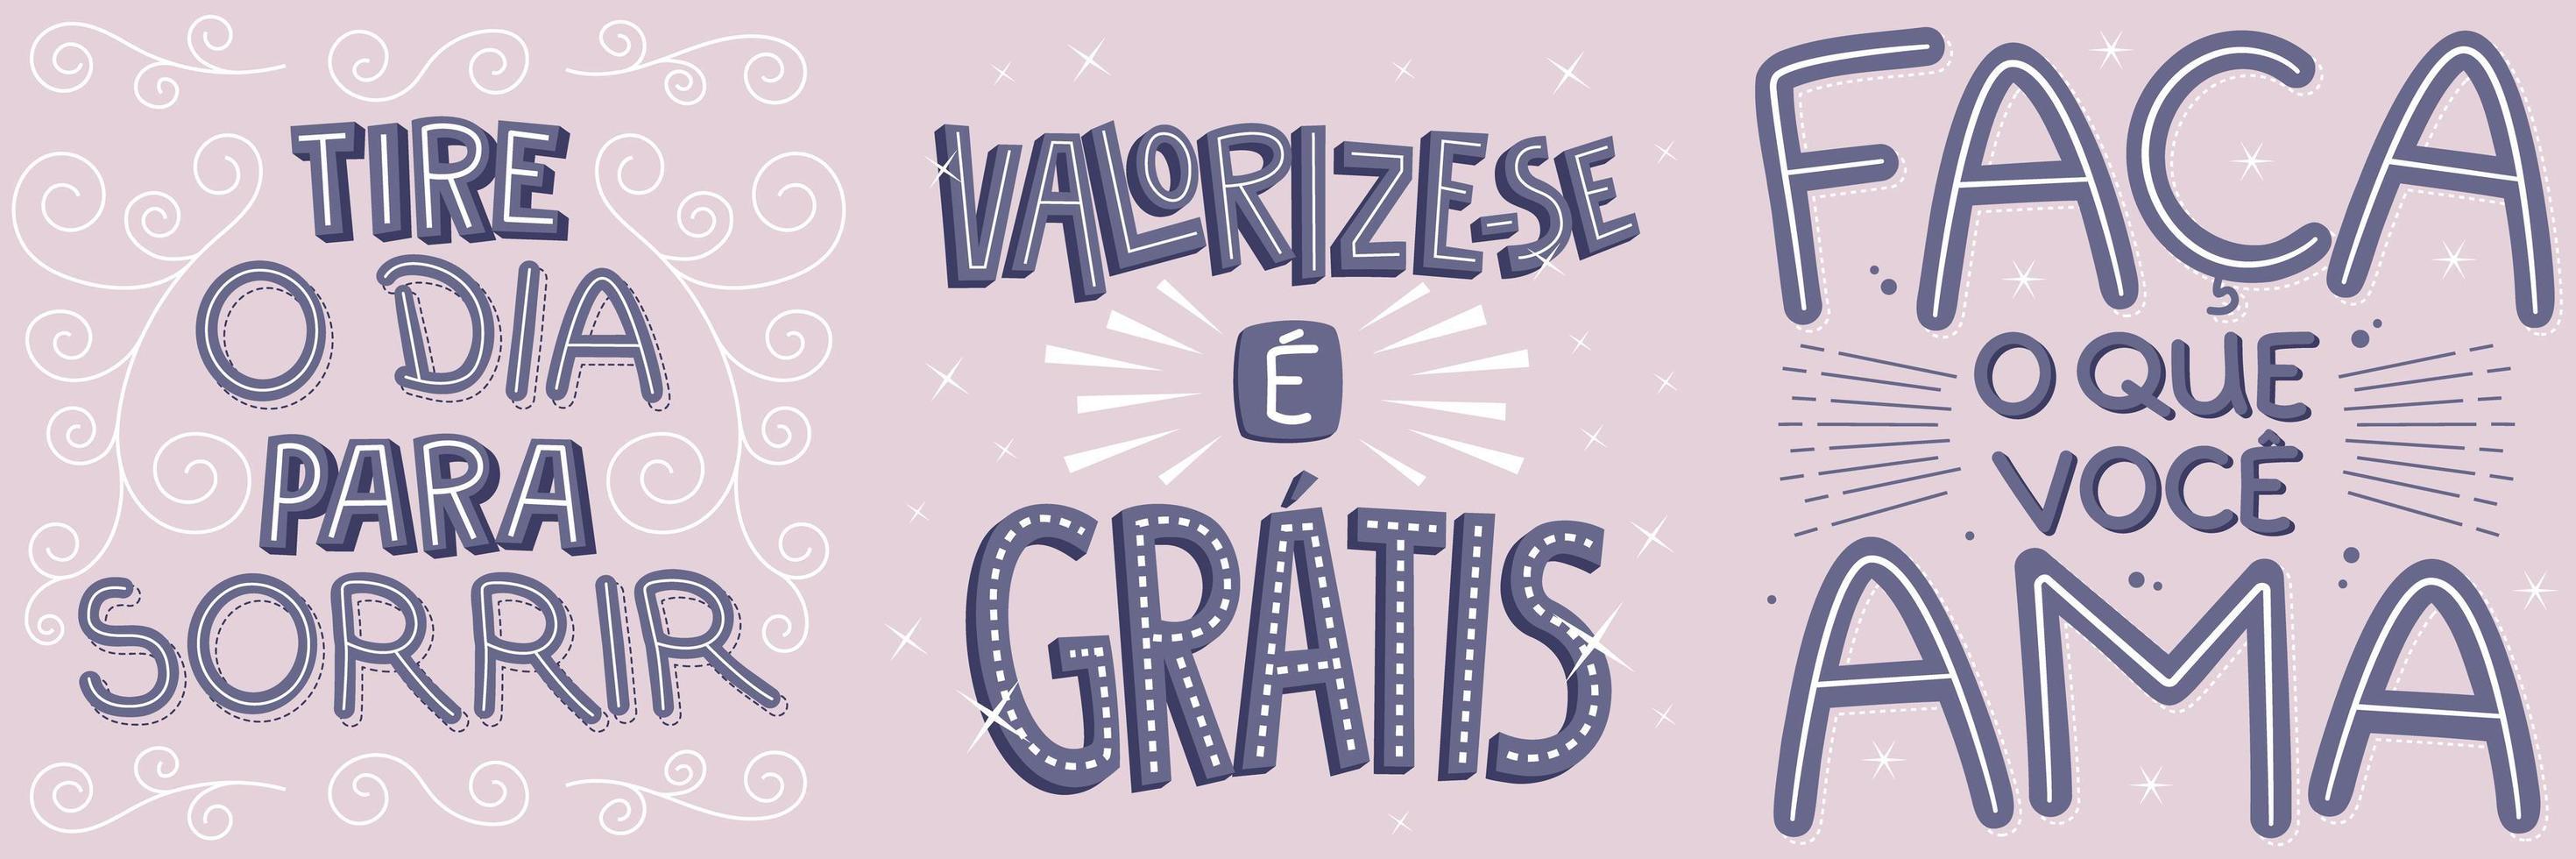 tre frasi incoraggianti in portoghese brasiliano. traduzione - prenditi la giornata per sorridere - valorizza te stesso, è gratis - fai ciò che ami vettore